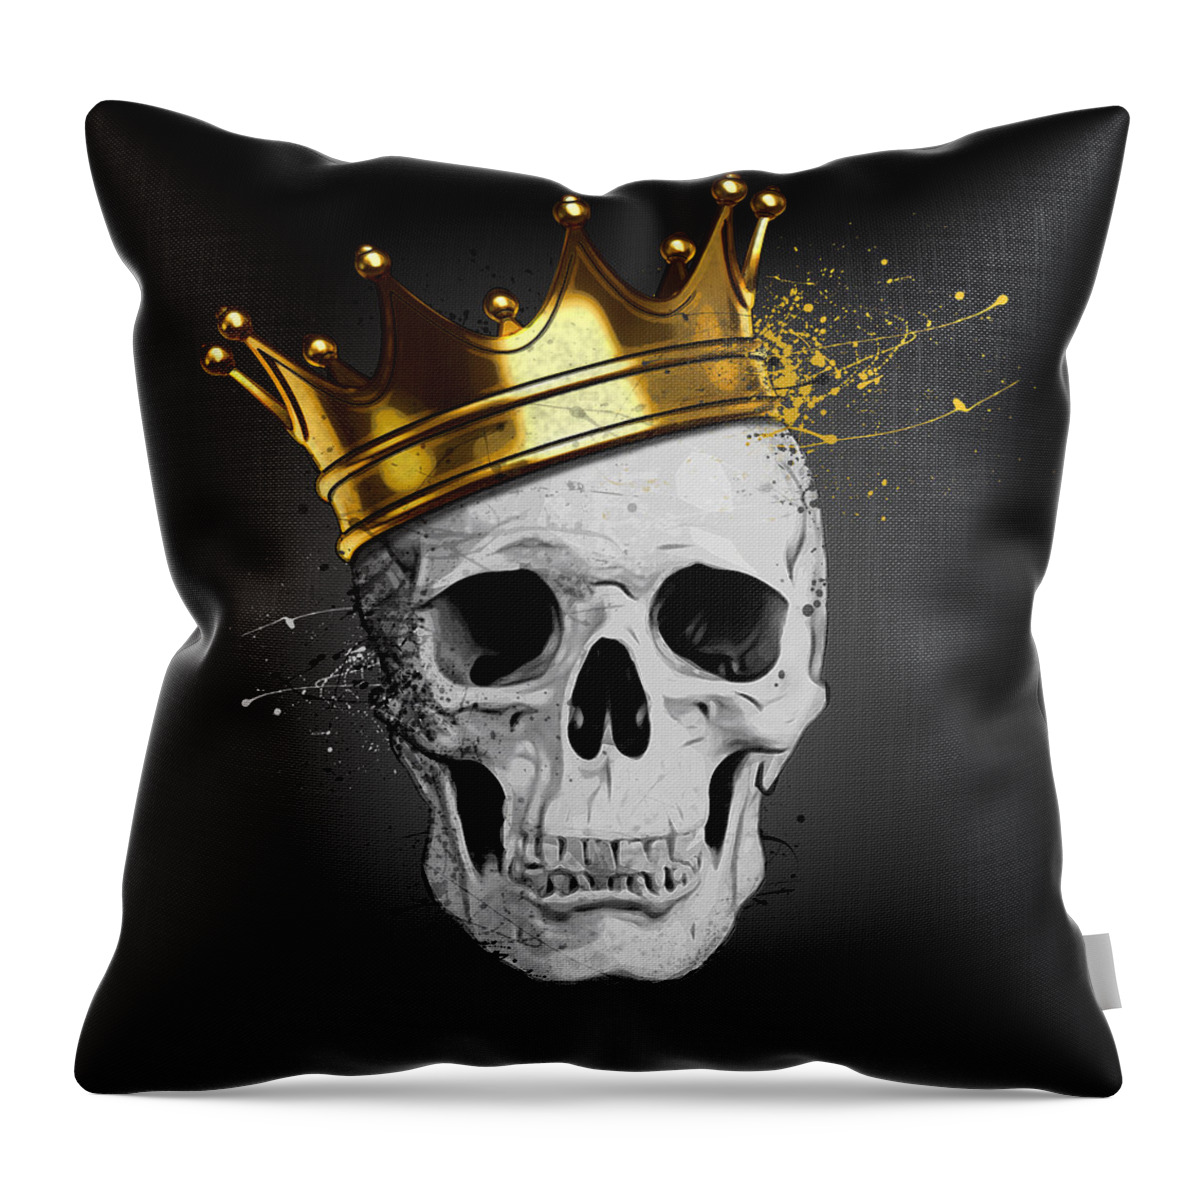 Skull Throw Pillow featuring the digital art Royal Skull by Nicklas Gustafsson